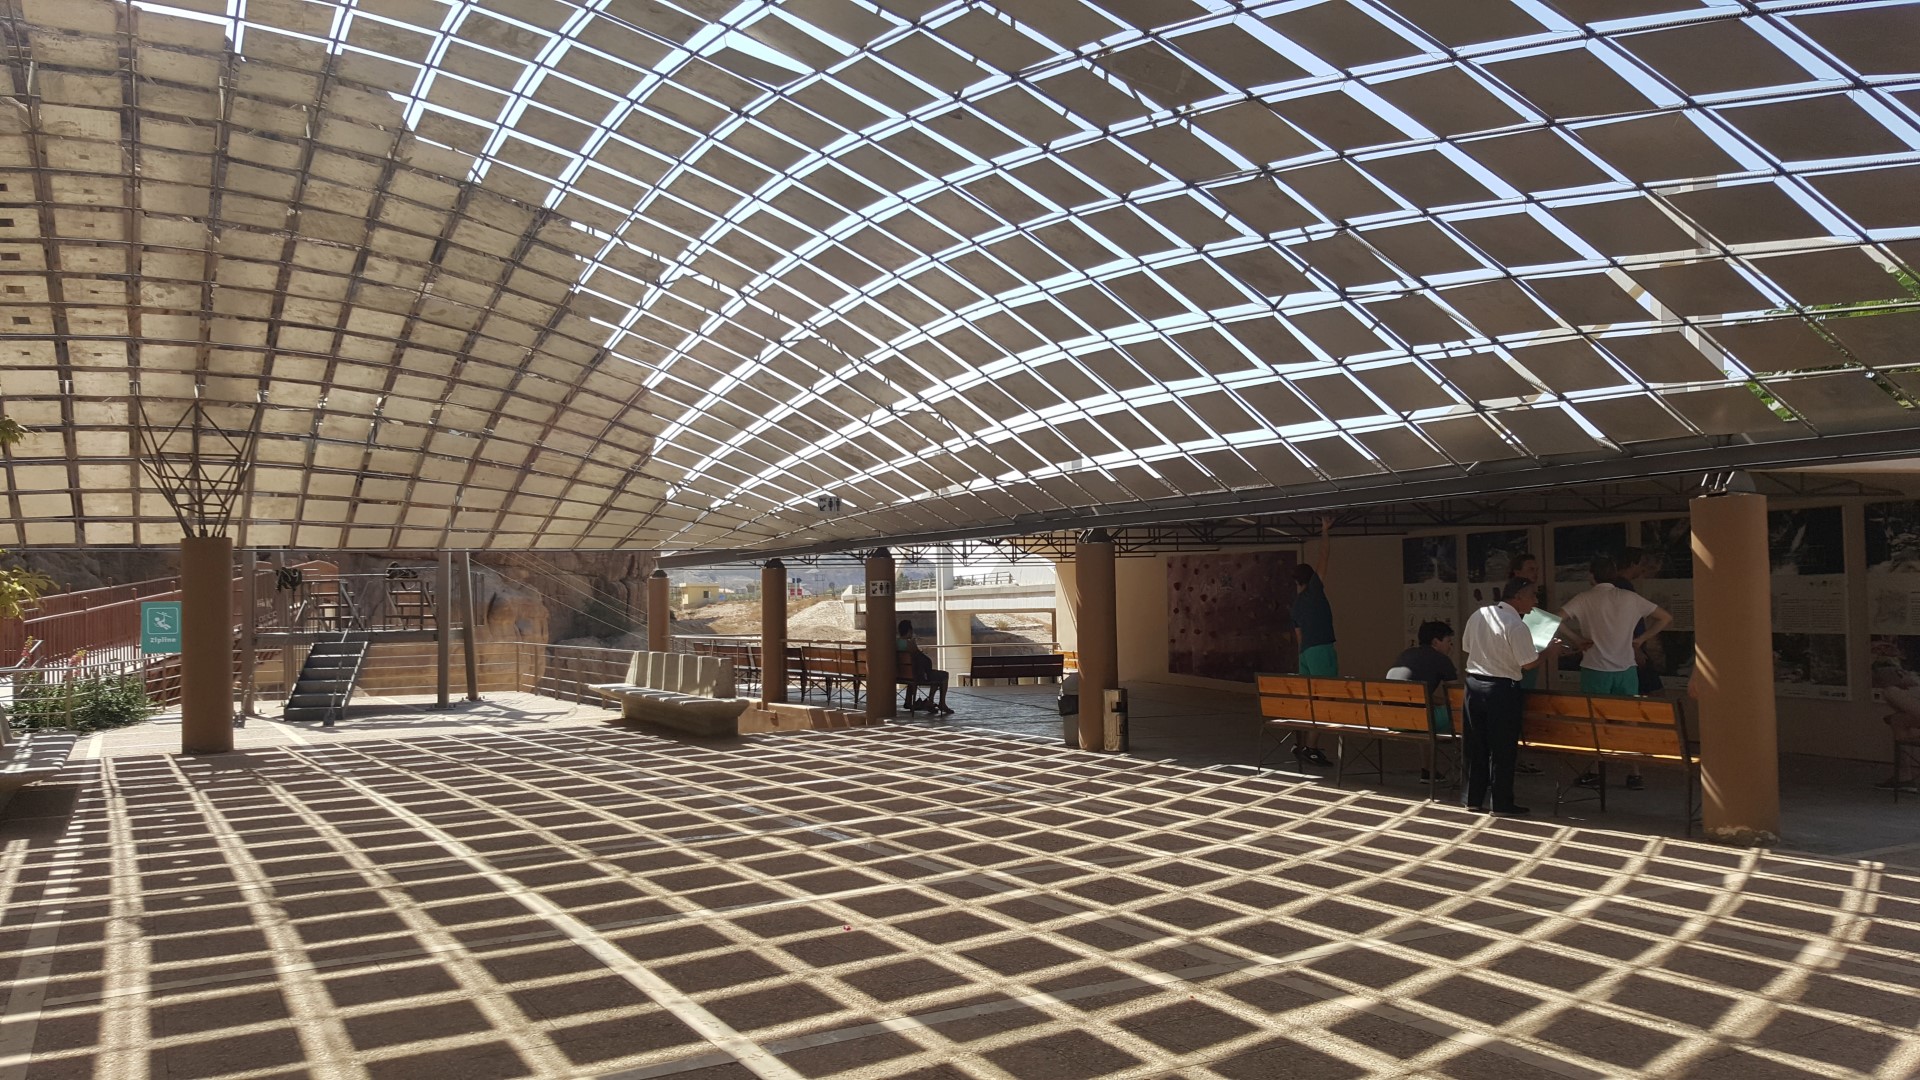 Het nieuwe bezoekerscentrum van Wadi Mujib, een speels architectonisch plaatje